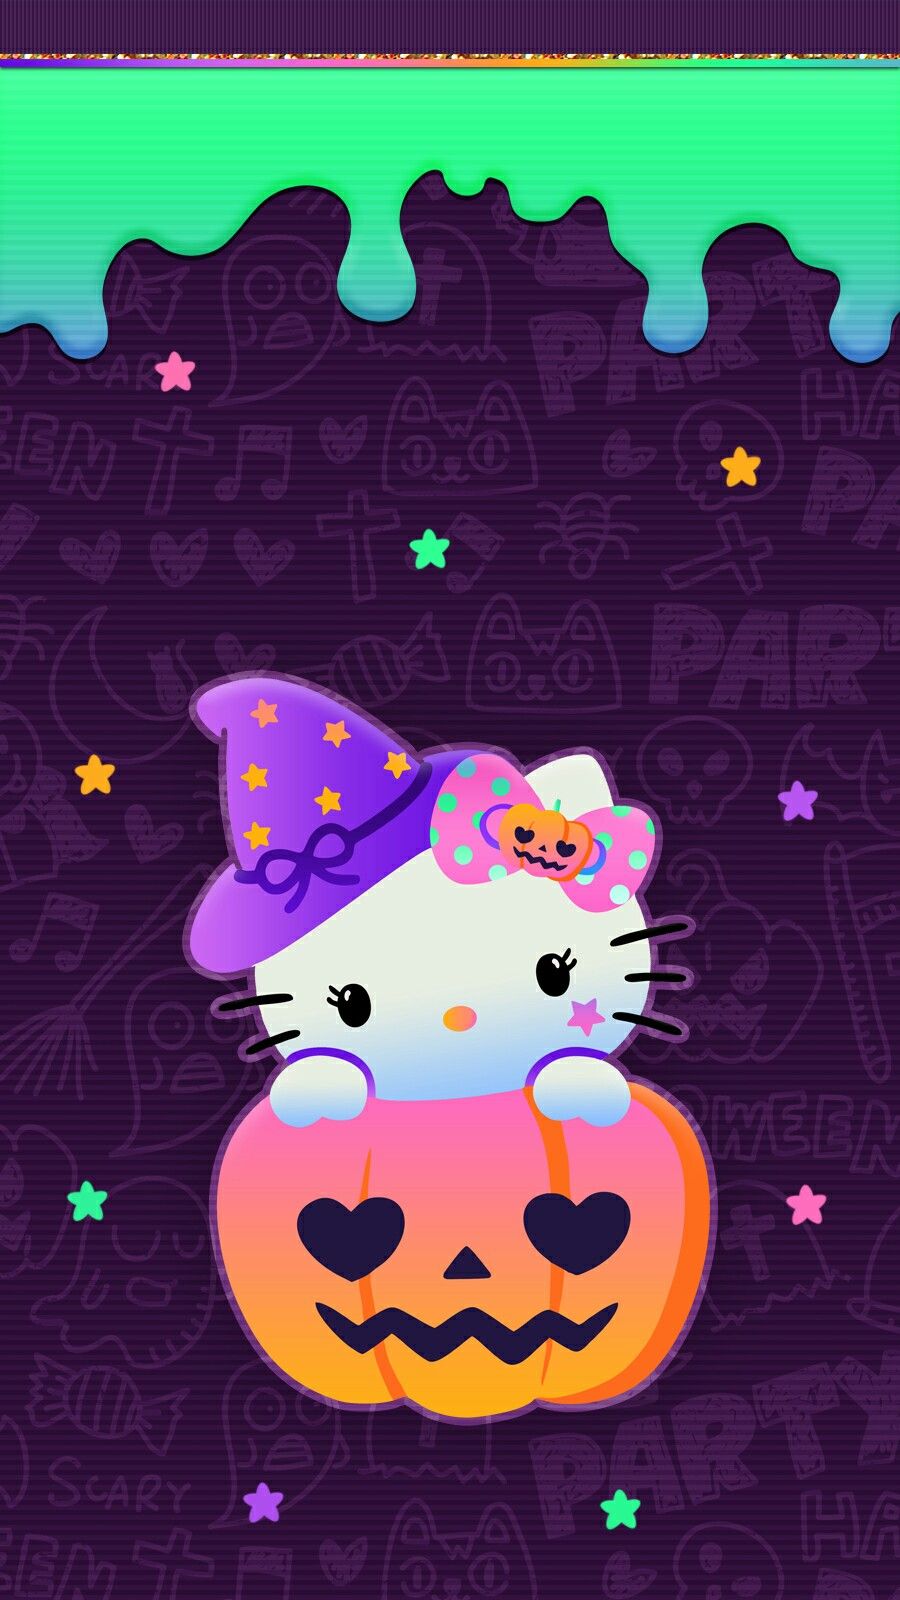 HELLO KITTY  Hello kitty wallpaper, Hello kitty iphone wallpaper, Kitty  wallpaper